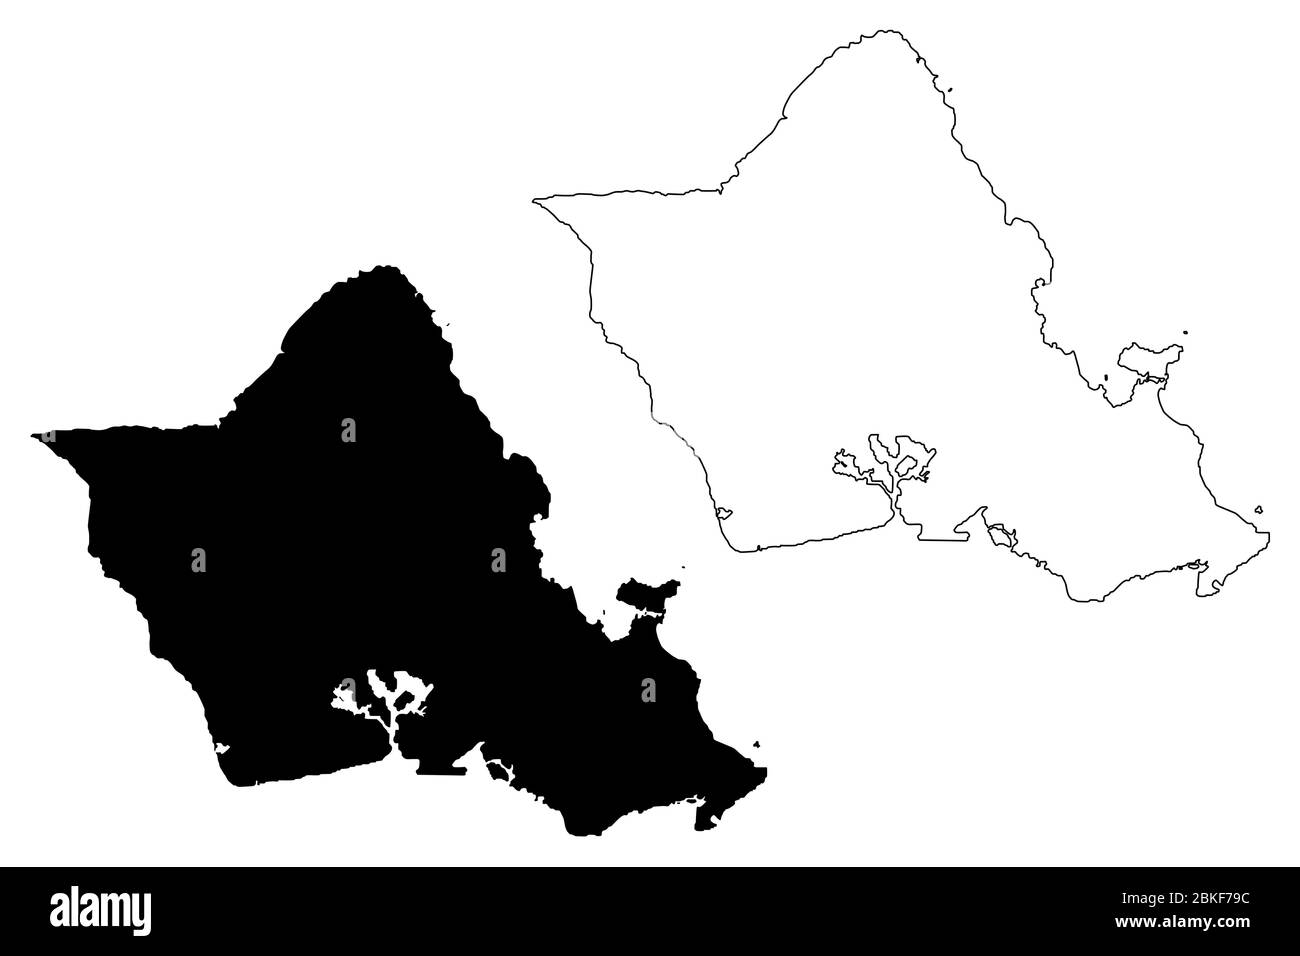 Ville et Comté d'Honolulu, Hawaï (comté des États-Unis, États-Unis d'Amérique, États-Unis, États-Unis, île, archipel) illustration vectorielle de carte, Scribble sket Illustration de Vecteur